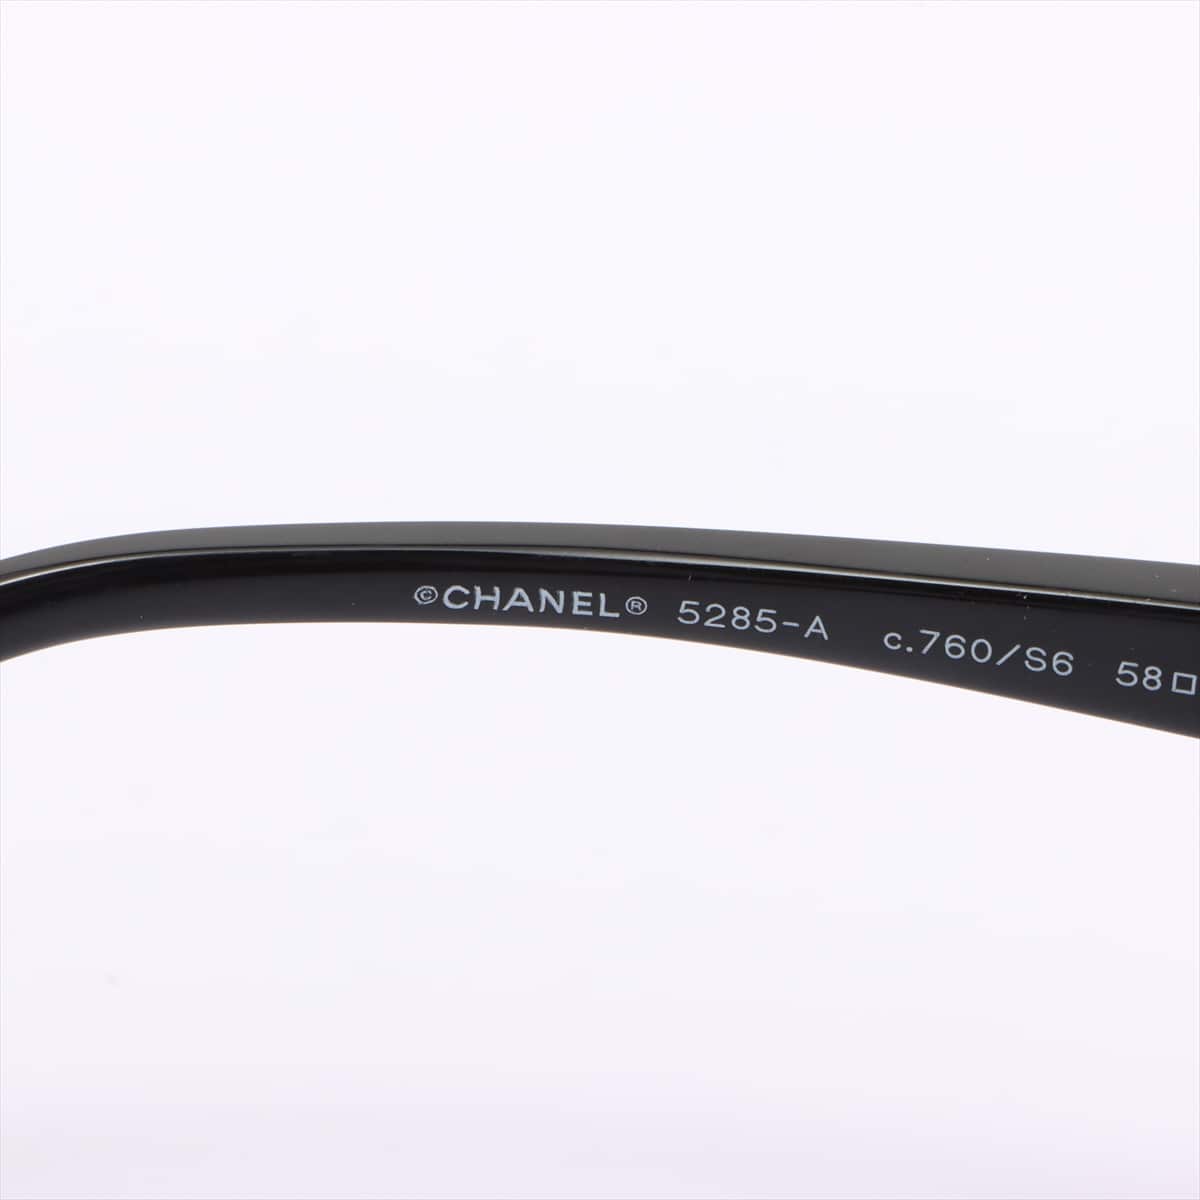 Chanel 5285-A Coco Mark Sunglass Plastic Black